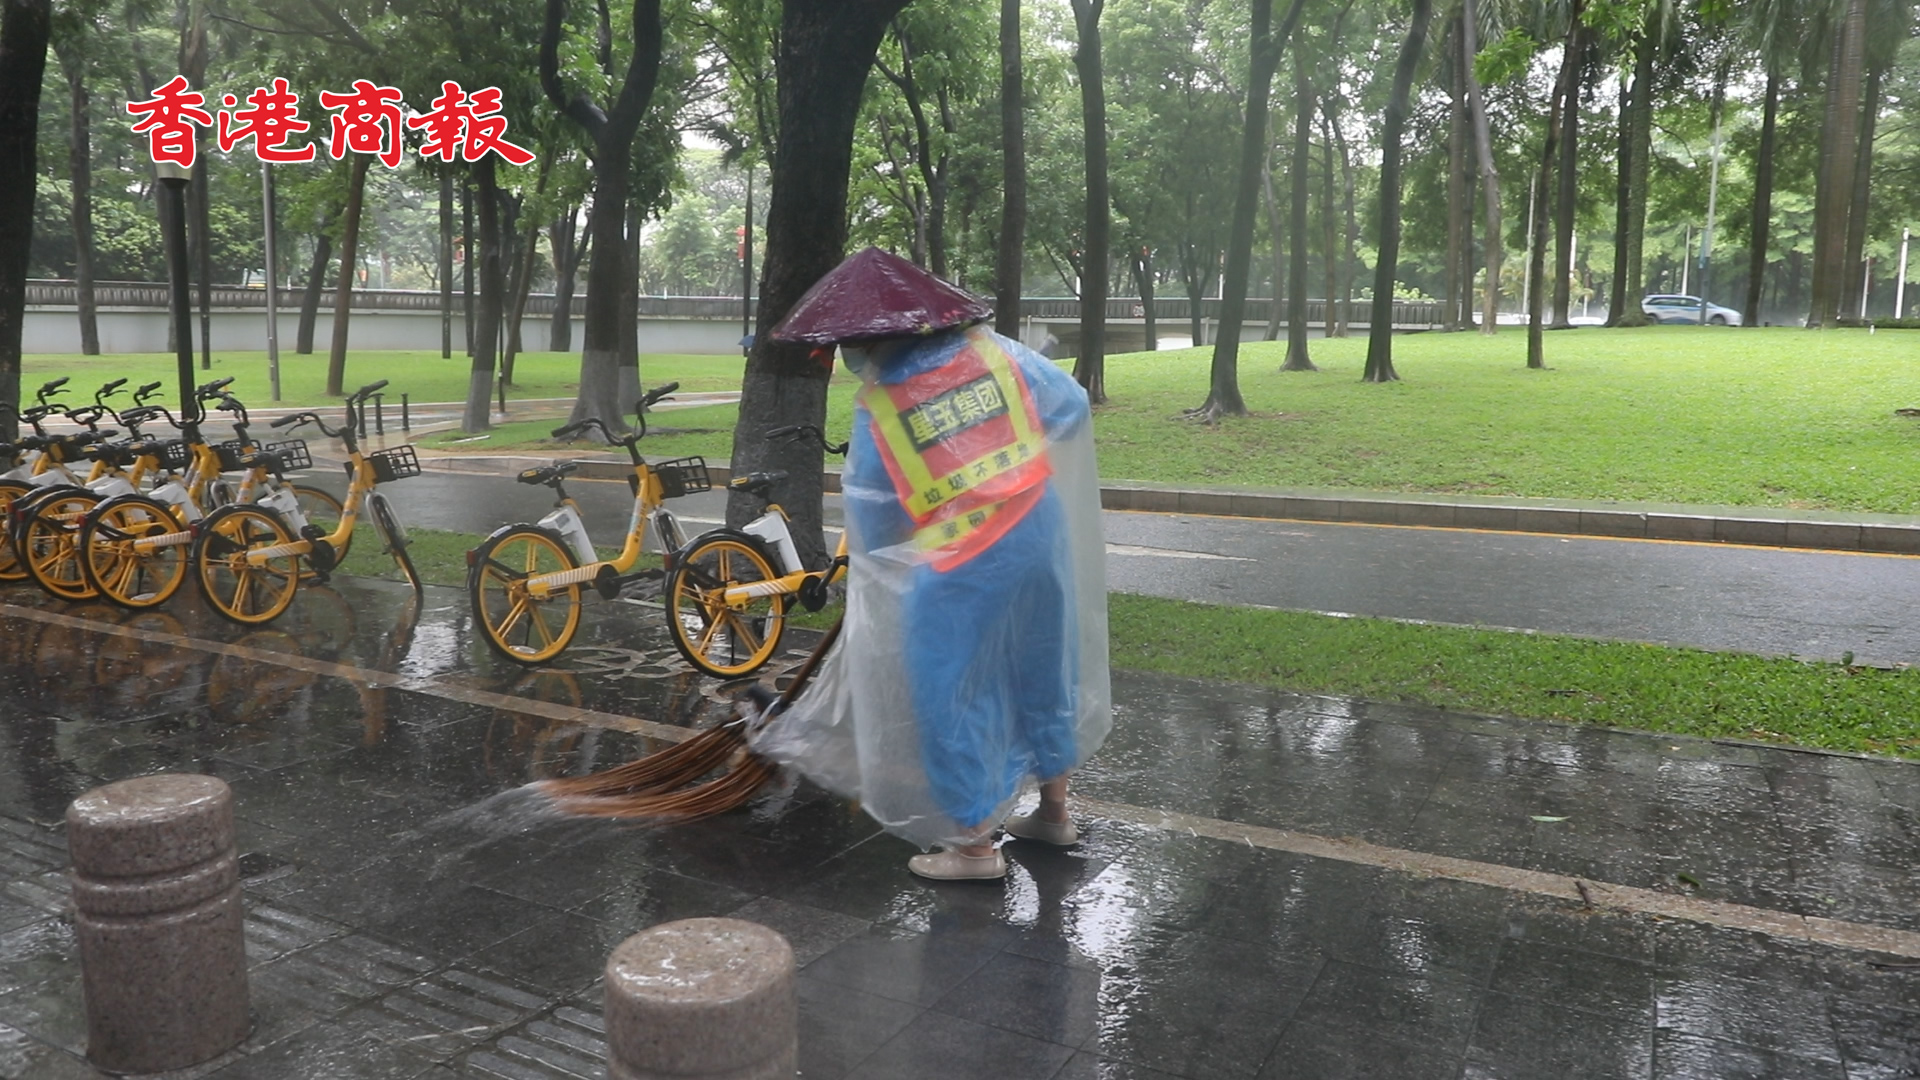 有片丨深圳暴雨中的風景線 環衛工人在行動